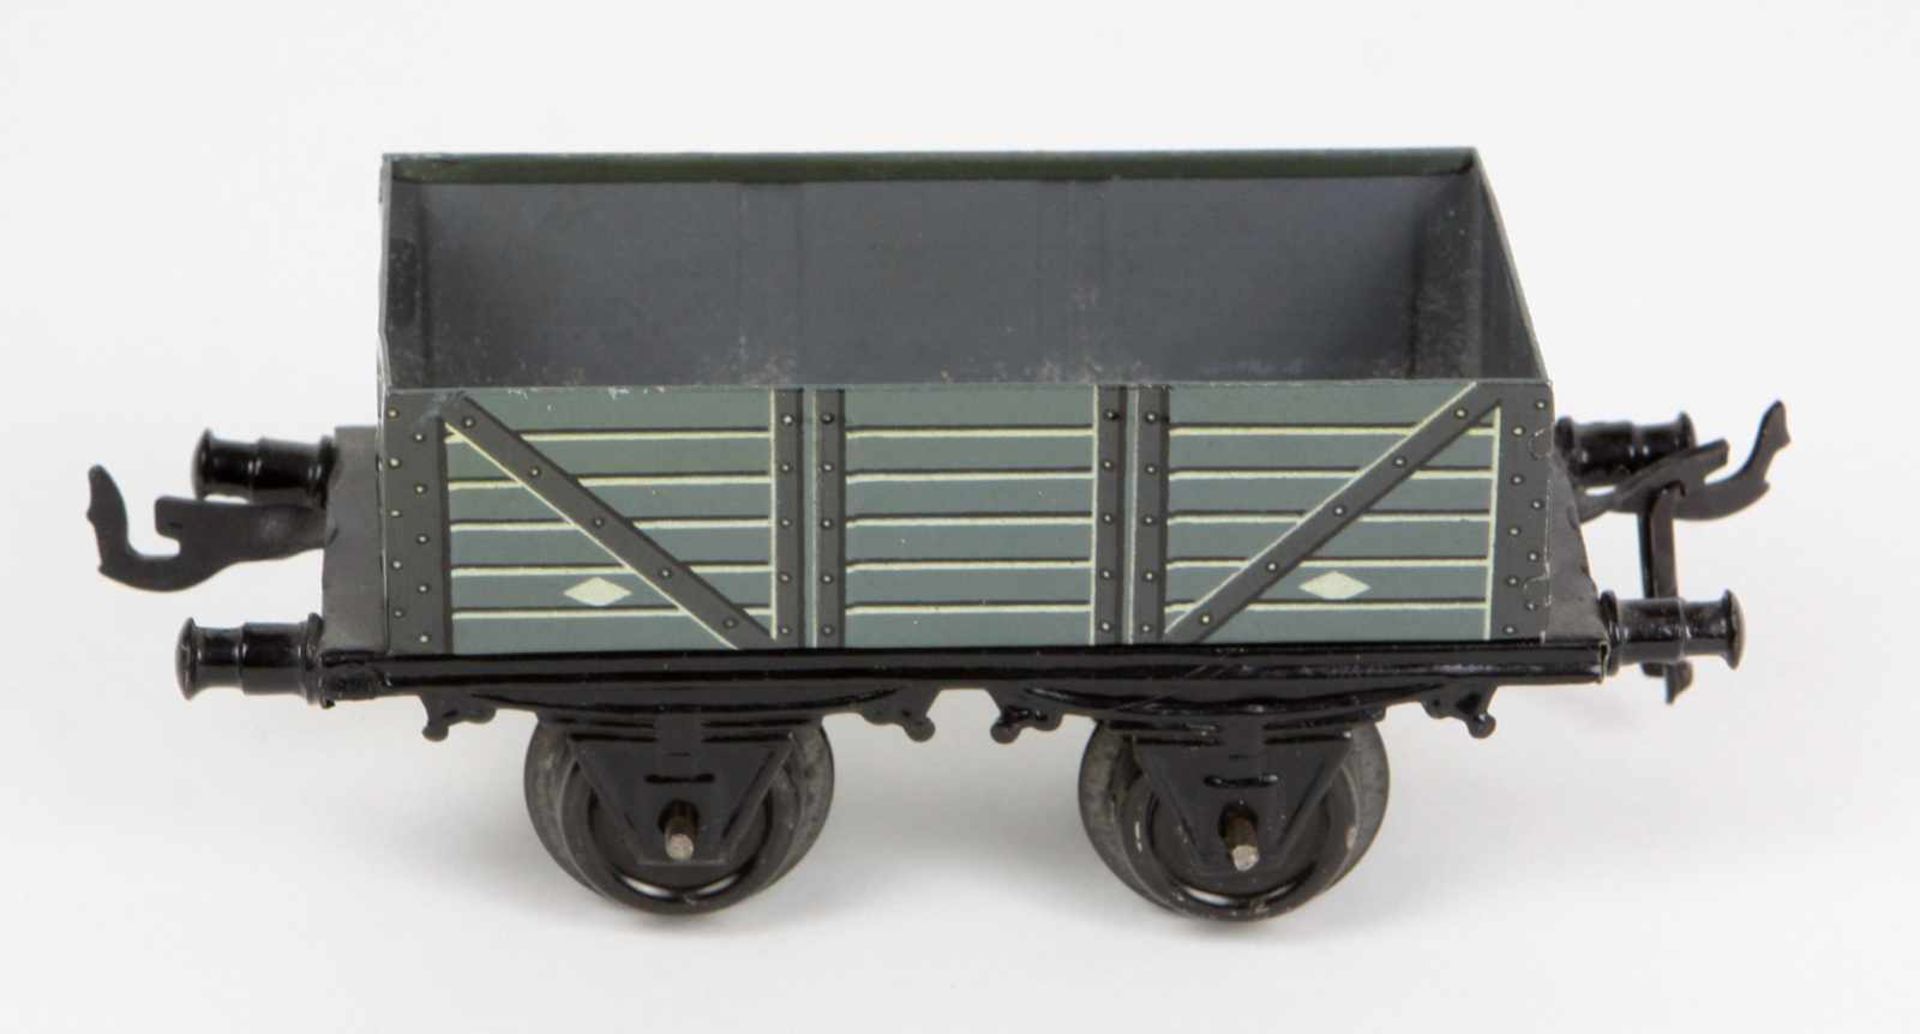 Bing offener Güterwagen Spur 0Blech farbig lithographiert, gemarkt Bing Werke Nürnberg um 1930, 2-